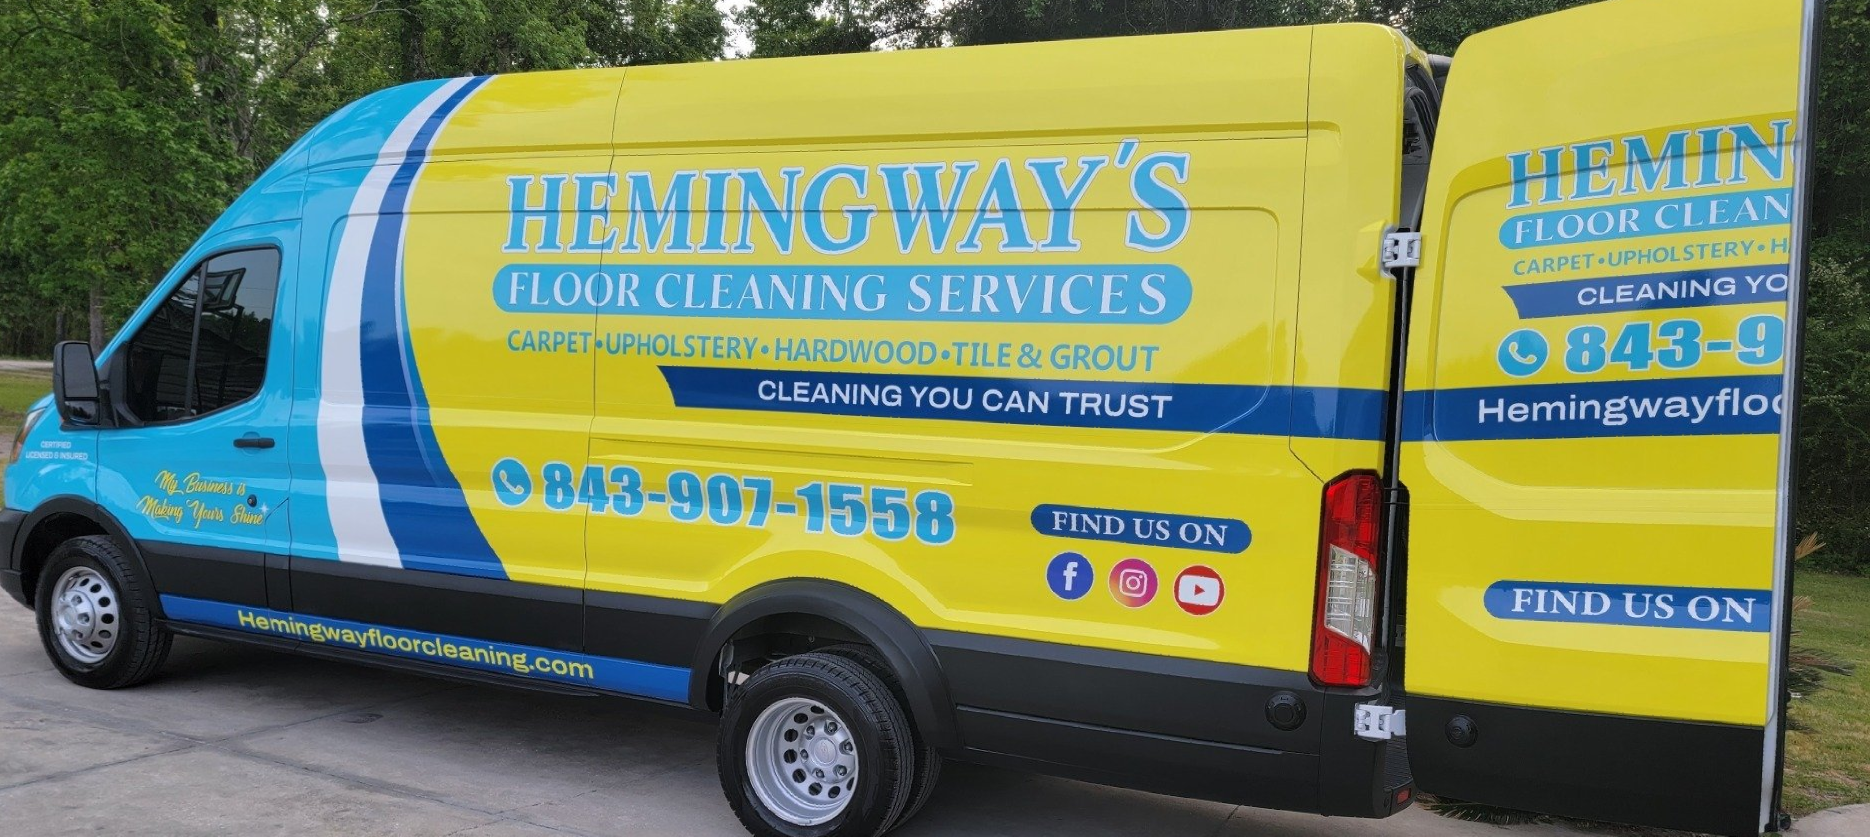 hemingways-floor-cleaning-van-wrap